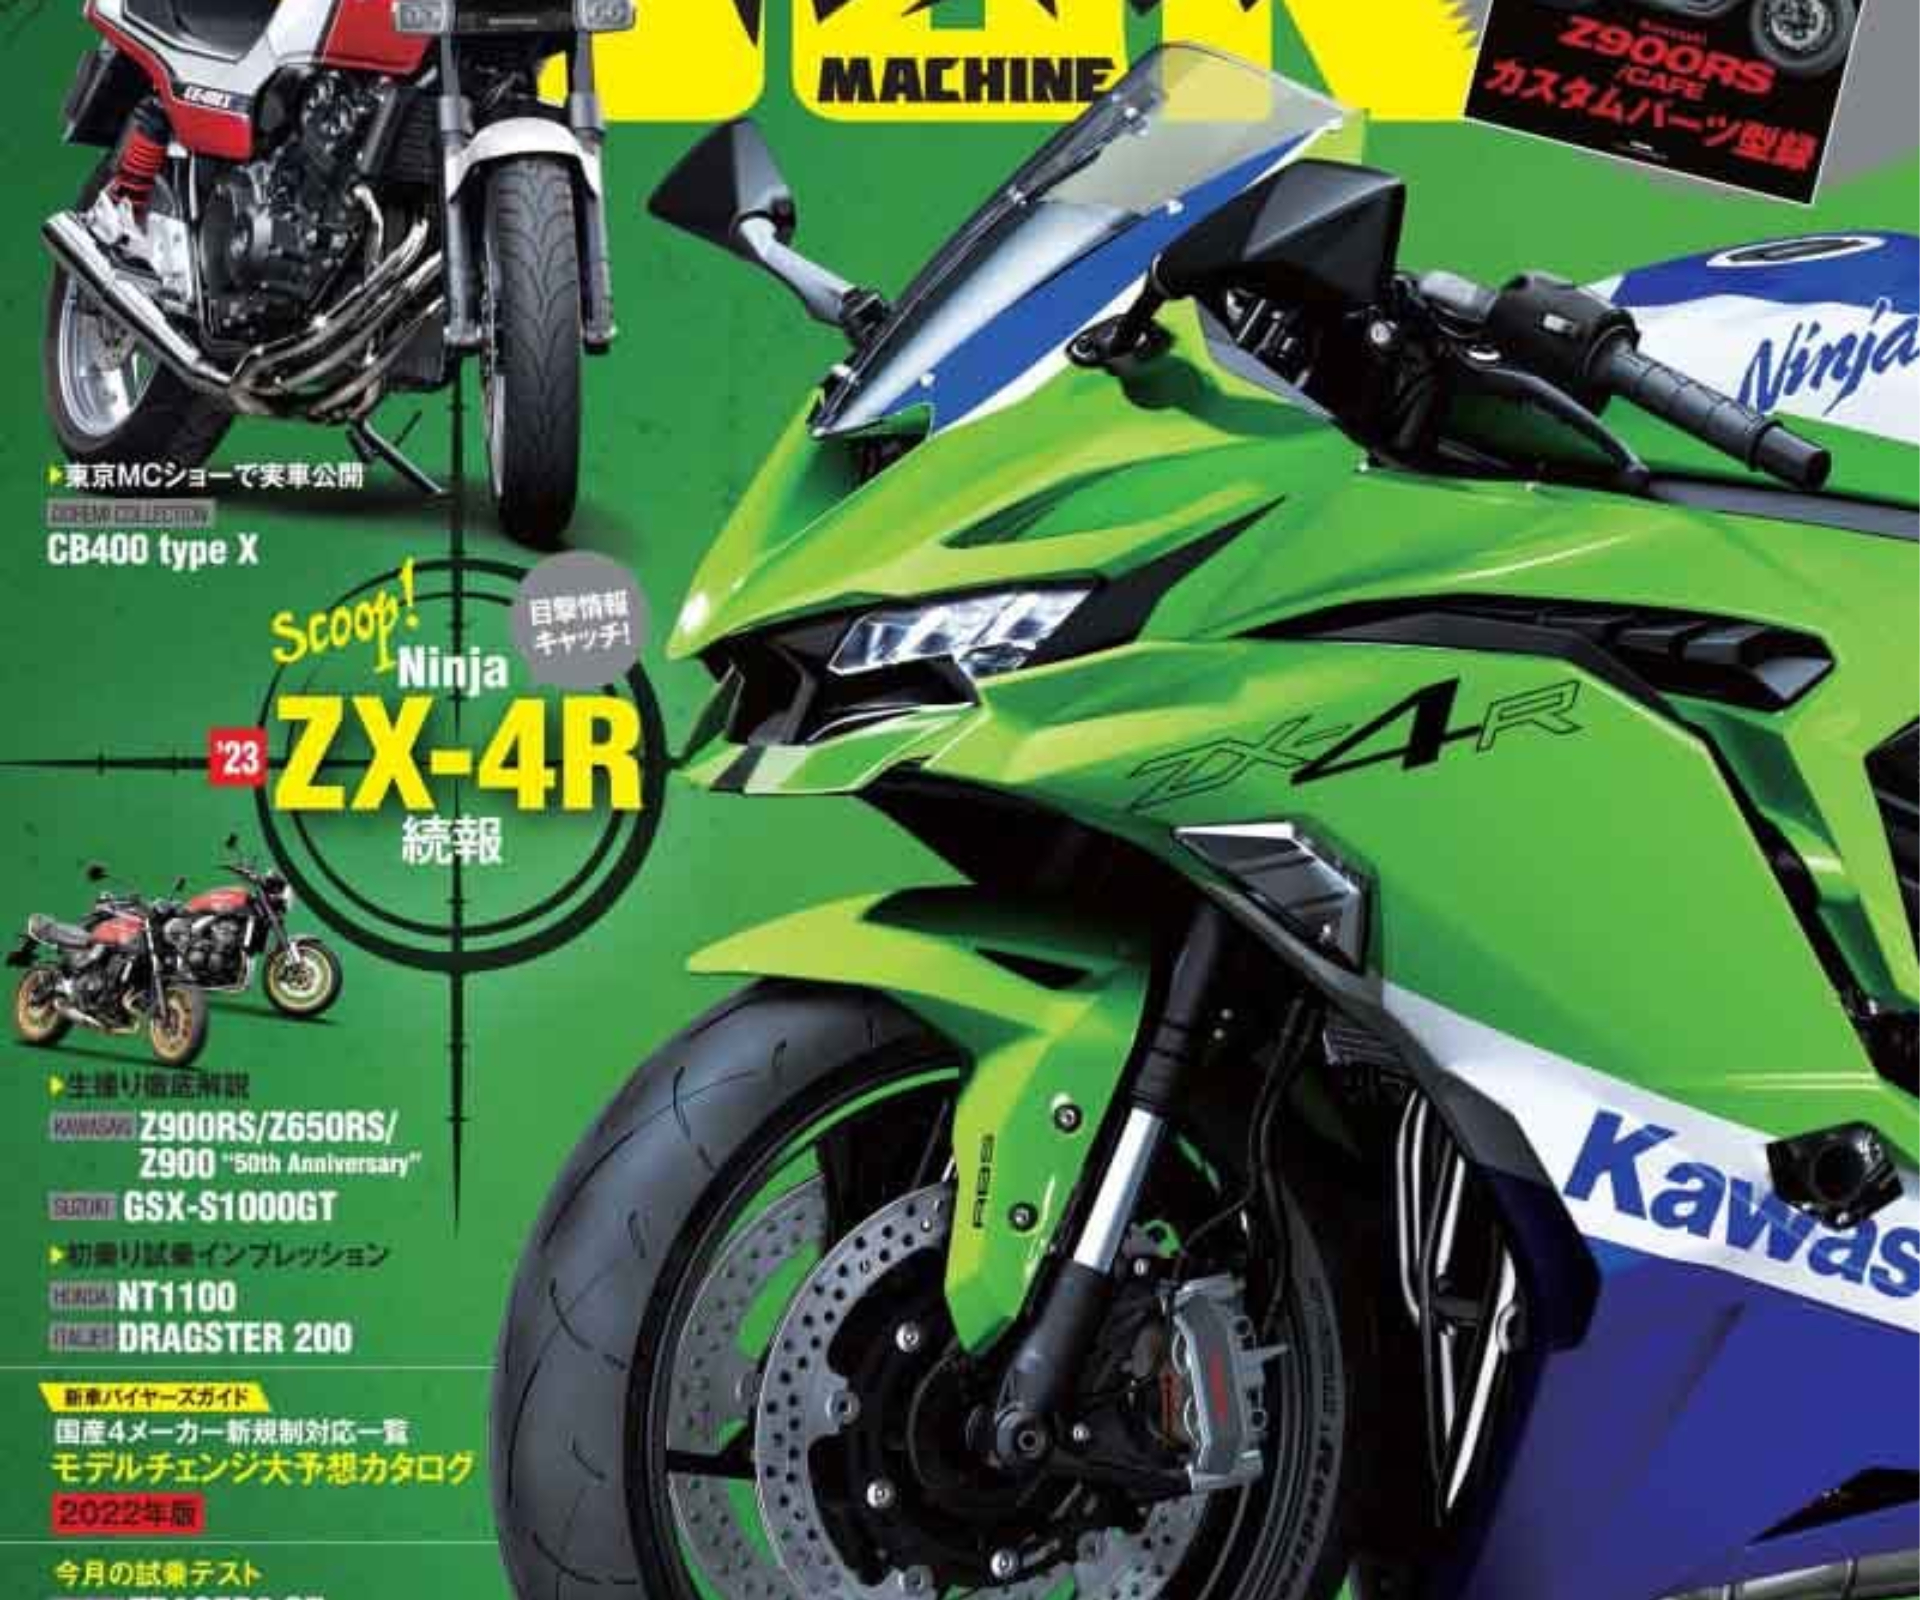 Upcoming Kawasaki ZX-4R Previewed - webBikeWorld